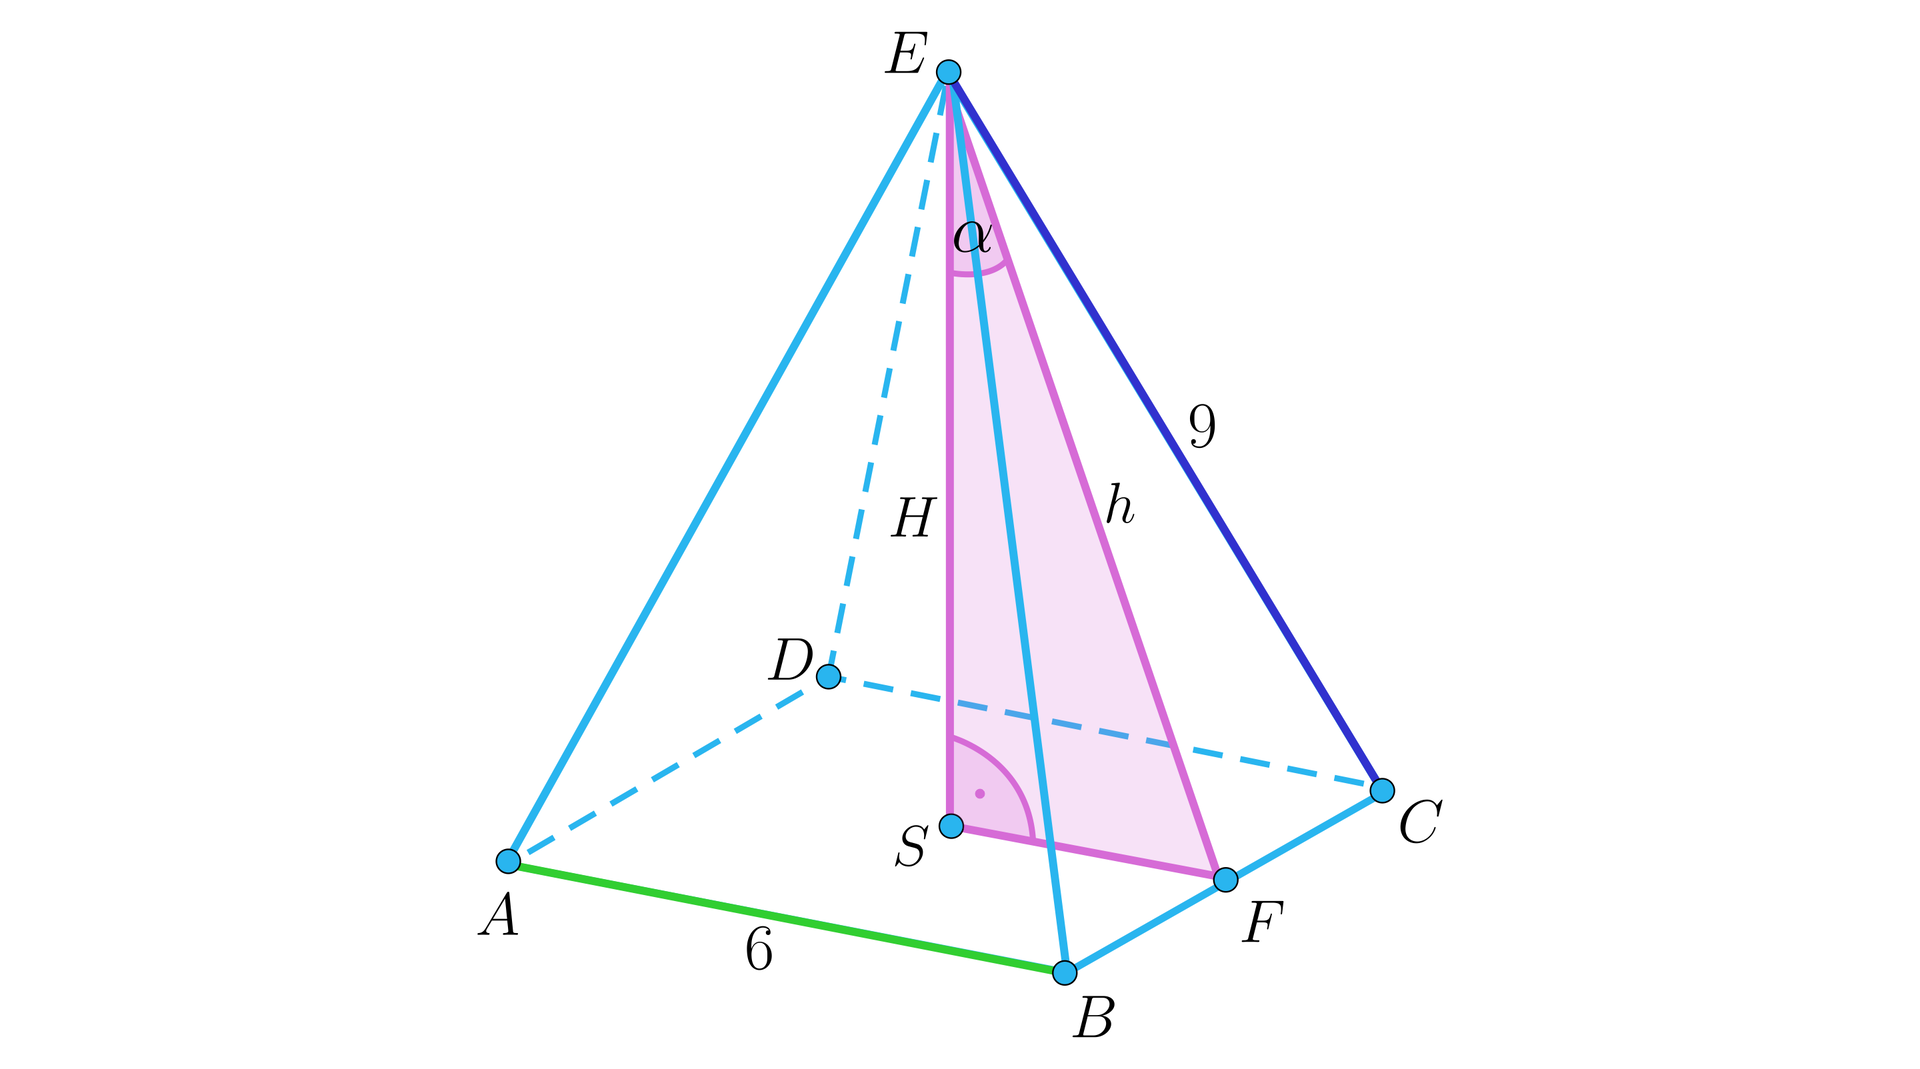 Rysunek przedstawia ostrosłup prawidłowy czworokątny o podstawie A B C D i wierzchołku E. Z wierzchołka upuszczona jest wysokość H, która jest jednocześnie odcinkiem E S. Przy punkcie S zaznaczony jest kąt prosty i od tego punktu poprowadzony jest odcinek S F, przy czym punkt F znajduje się na krawędzi B C. Na rysunku oznaczony  jest również odcinek E F i kąt prosty E F C. Kolorem różowym zaznaczony jest trójkąt prostokątny S F E. Jego przeciwprostokątna E F jest opisana jako h, a kąt przy wierzchołku E, dokładniej kąt S E F jest oznaczony jako alfa. Podane są także długości krawędzi: A B ma długość 6, a C E 9.